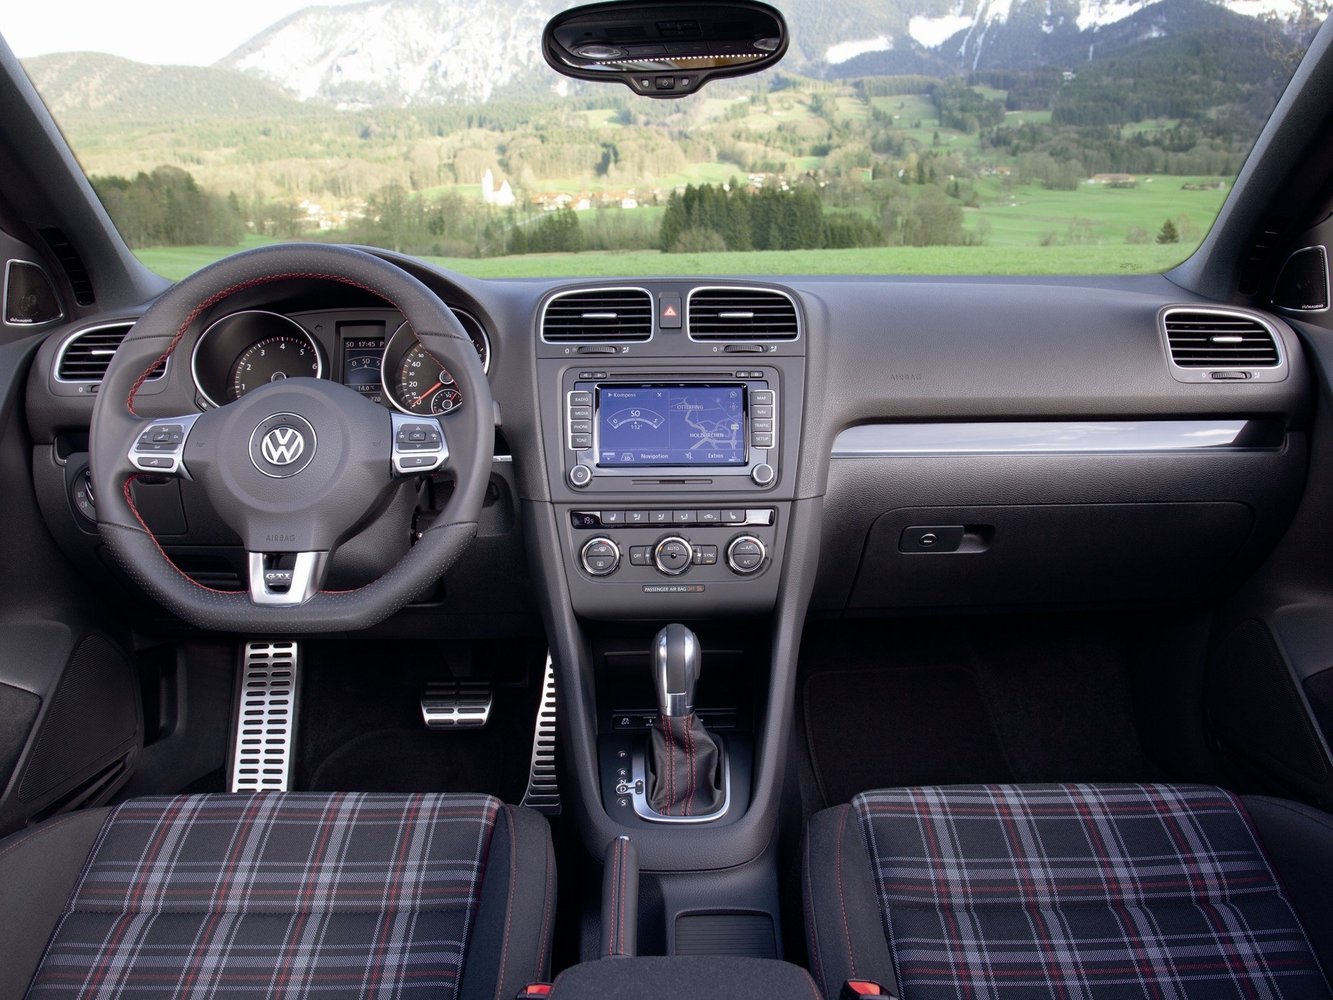 кабриолет Volkswagen Golf GTI 2009 - 2012г выпуска модификация 2.0 AMT (210 л.с.)